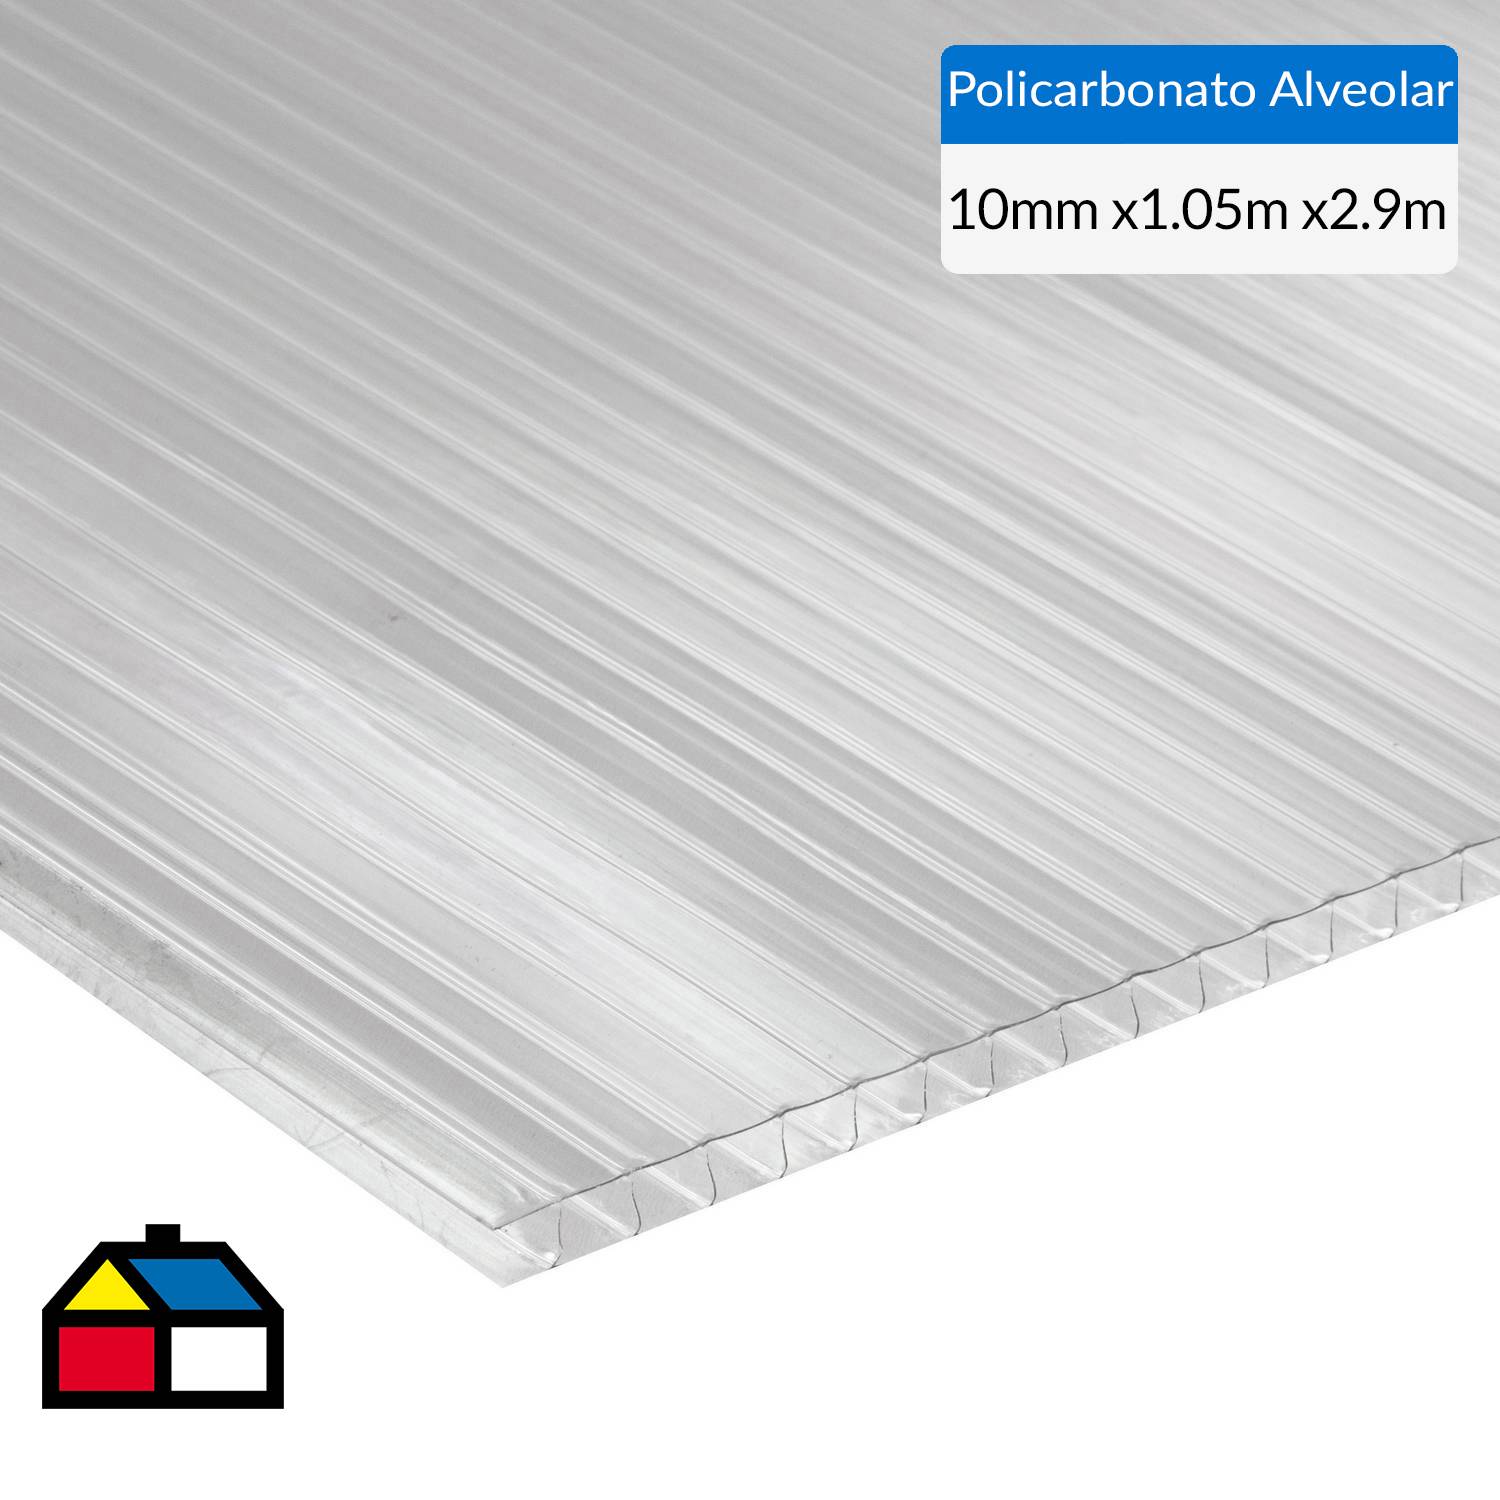 plancha policarbonato alveolar 10mm transparente 2.10x2.90